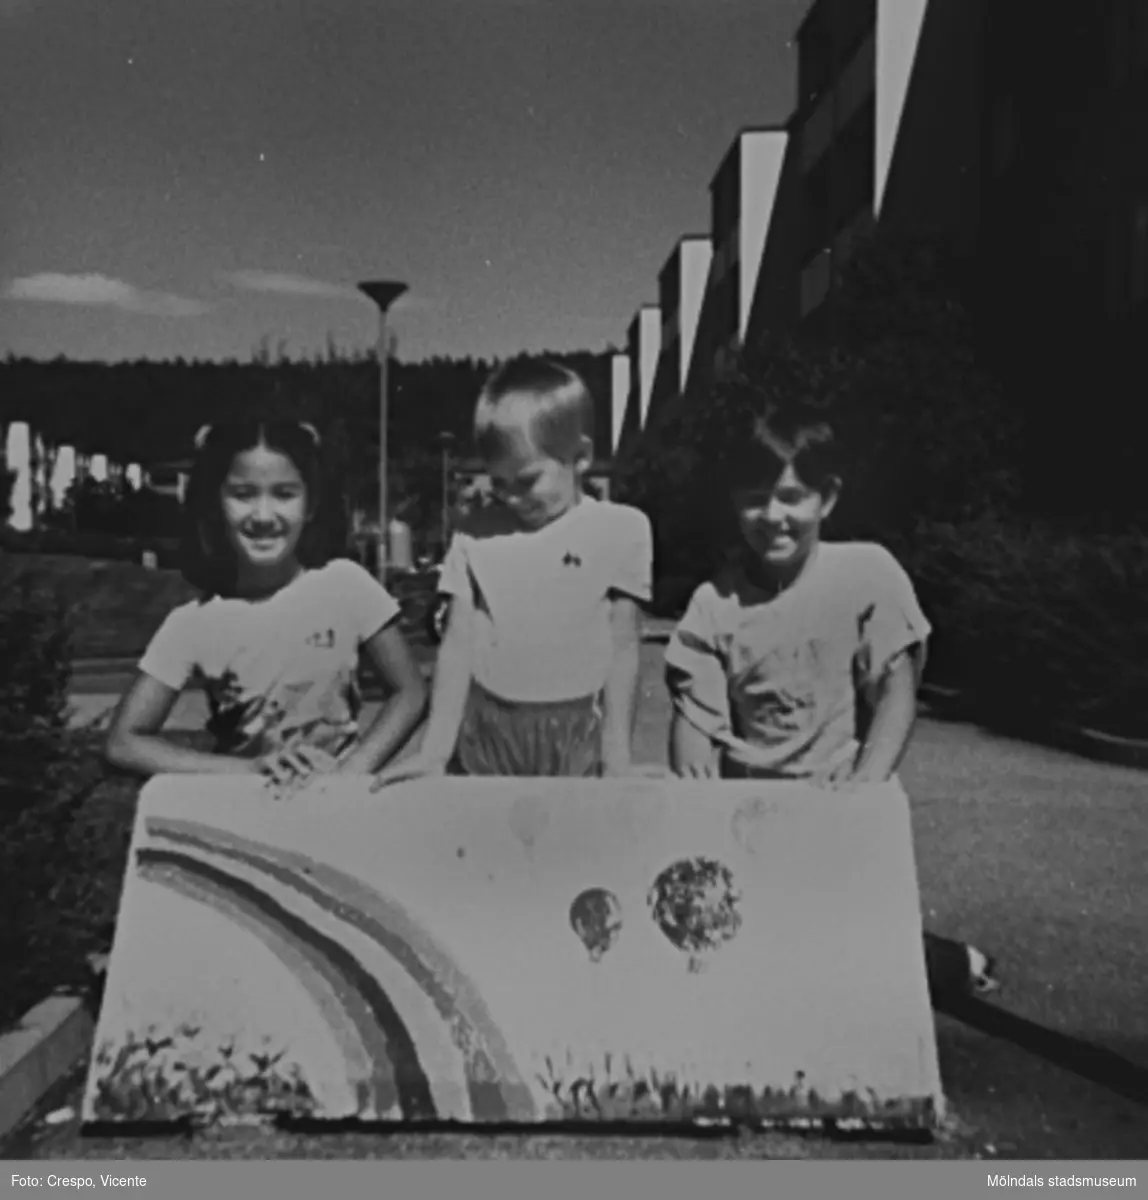 De tre barnen Dos-Alva, Helena och Carita, boende i bostadsrättsföreningen Tegen, som målade "suggorna" (väghindren) på föreningens område i början av 1980-talet. Barnen är namngivna från vänster.